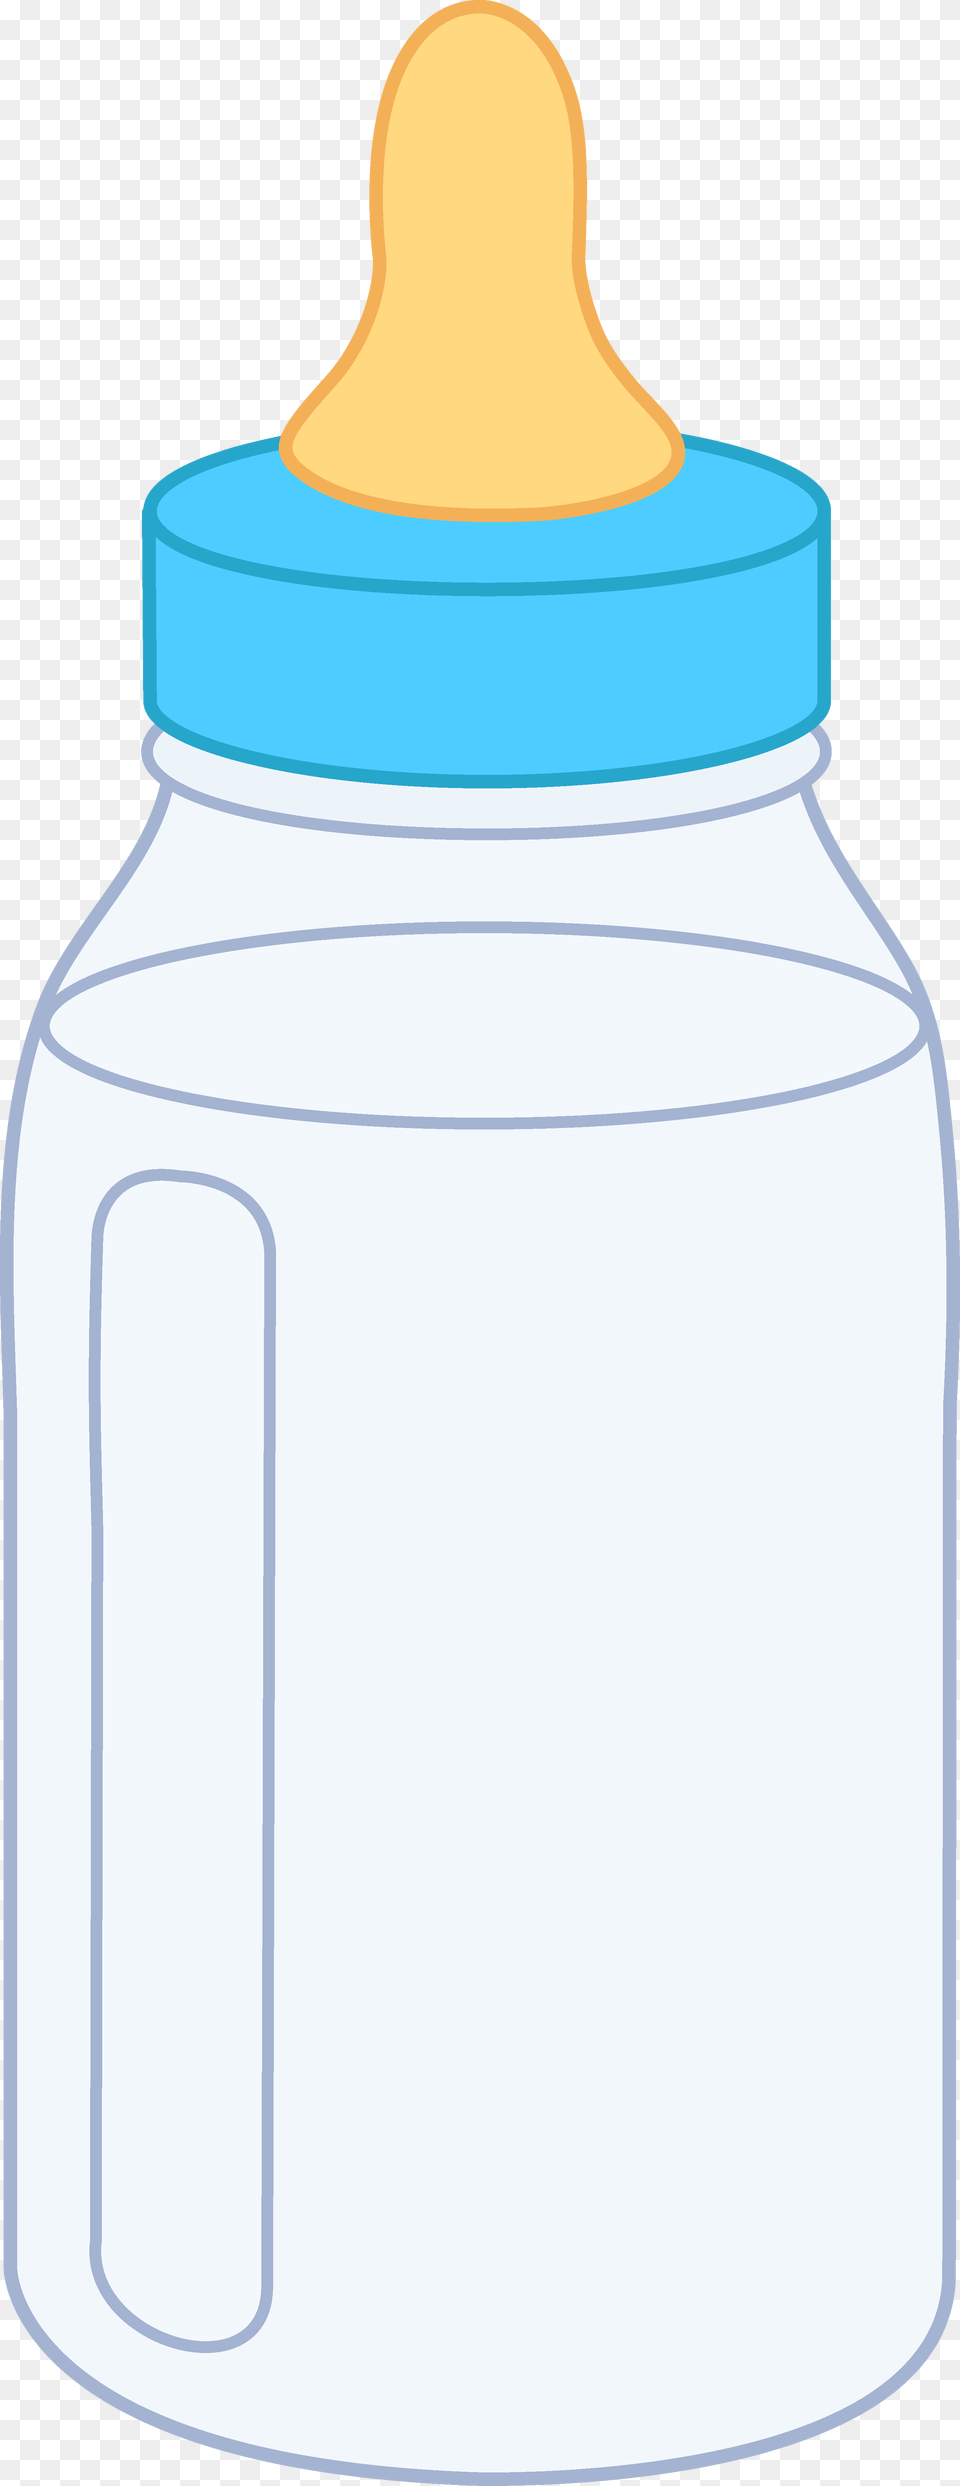 Empty Water Bottle, Jar, Shaker, Jug Png